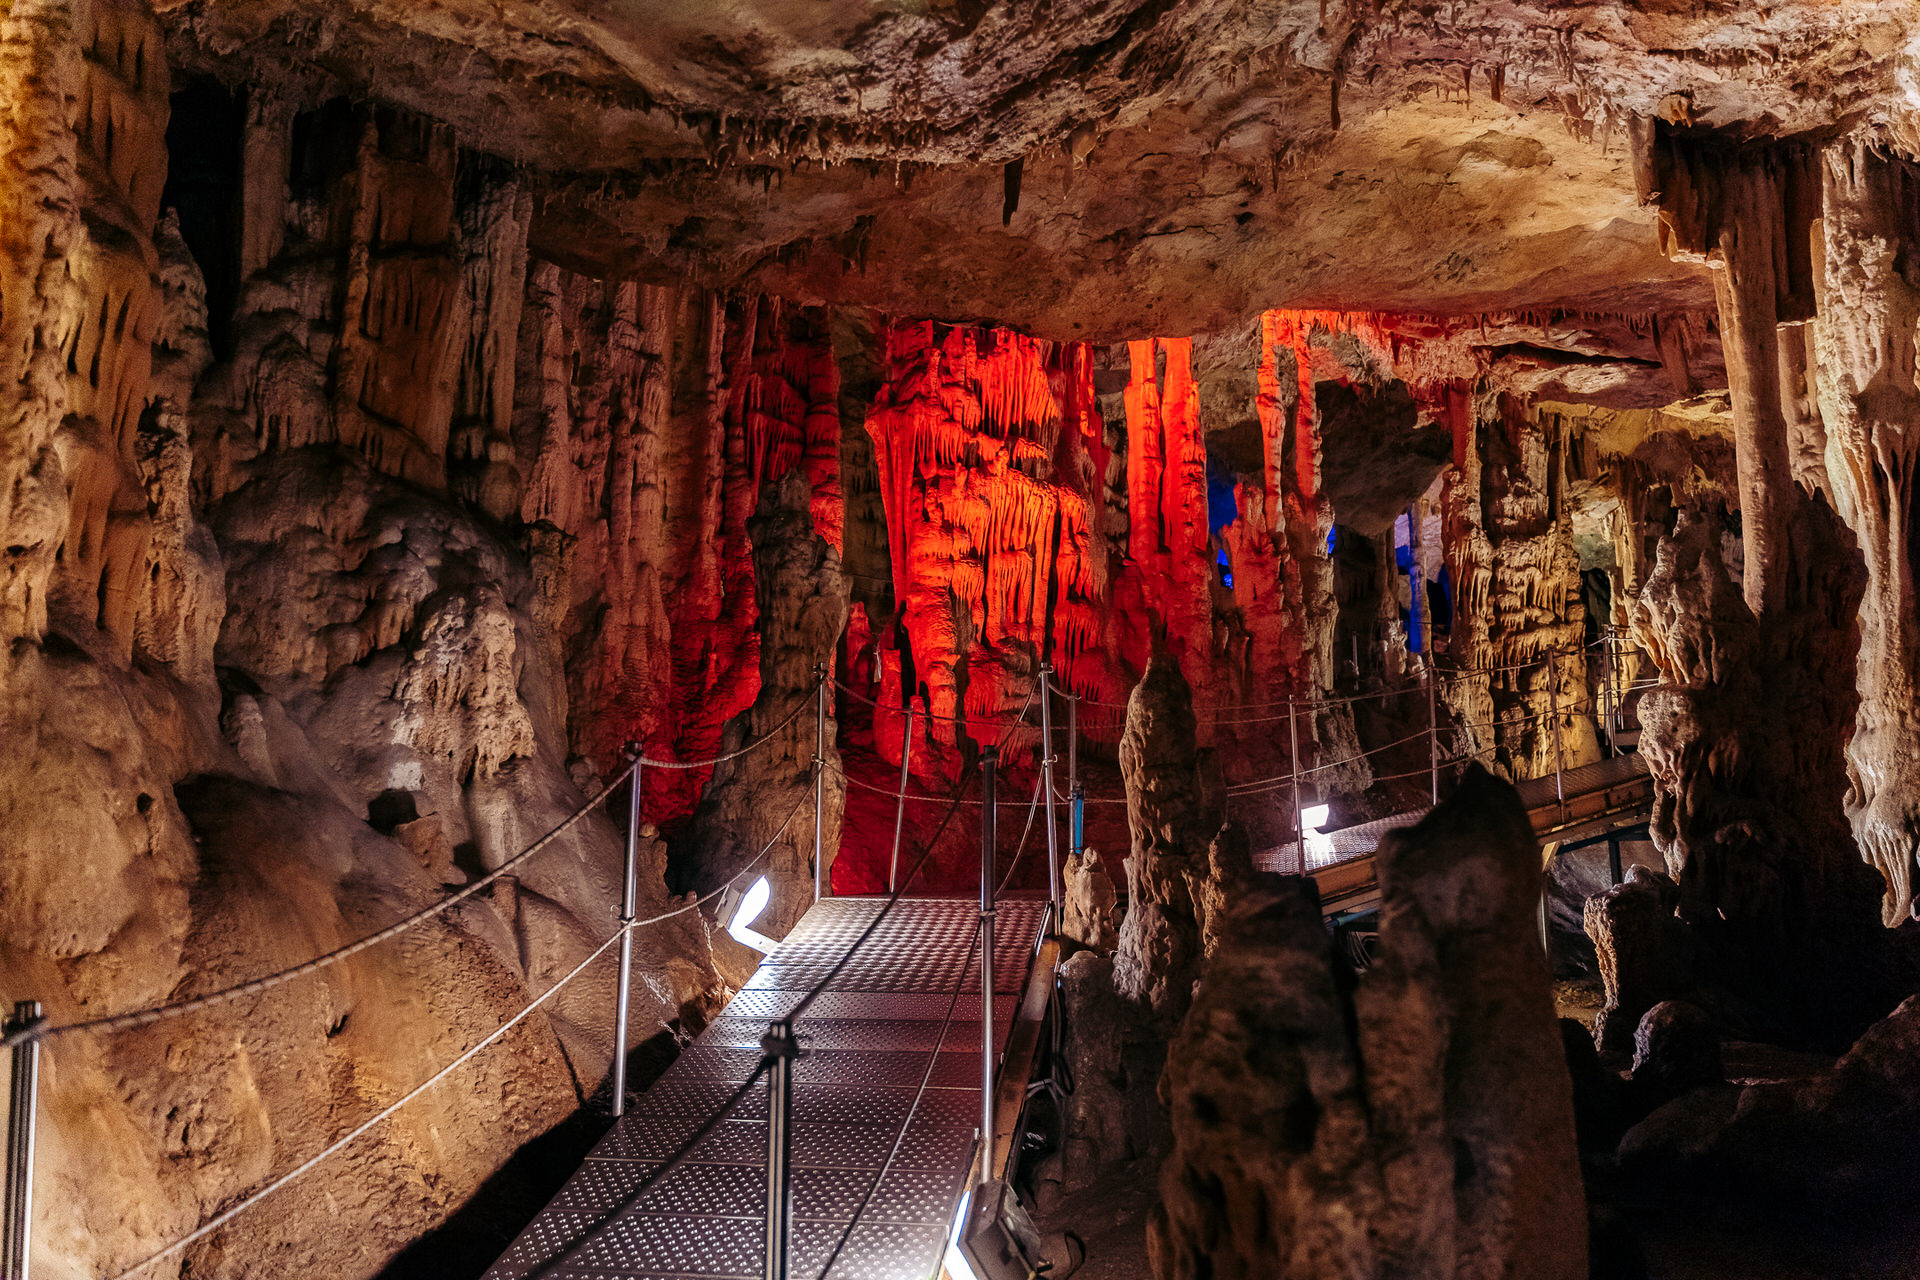 Σπήλαιο Σφενδόνη Ζωνιανών: Το travelgirl.gr σε ξεναγεί σε ένα από τα ωραιότερα σπήλαια της Ελλάδας